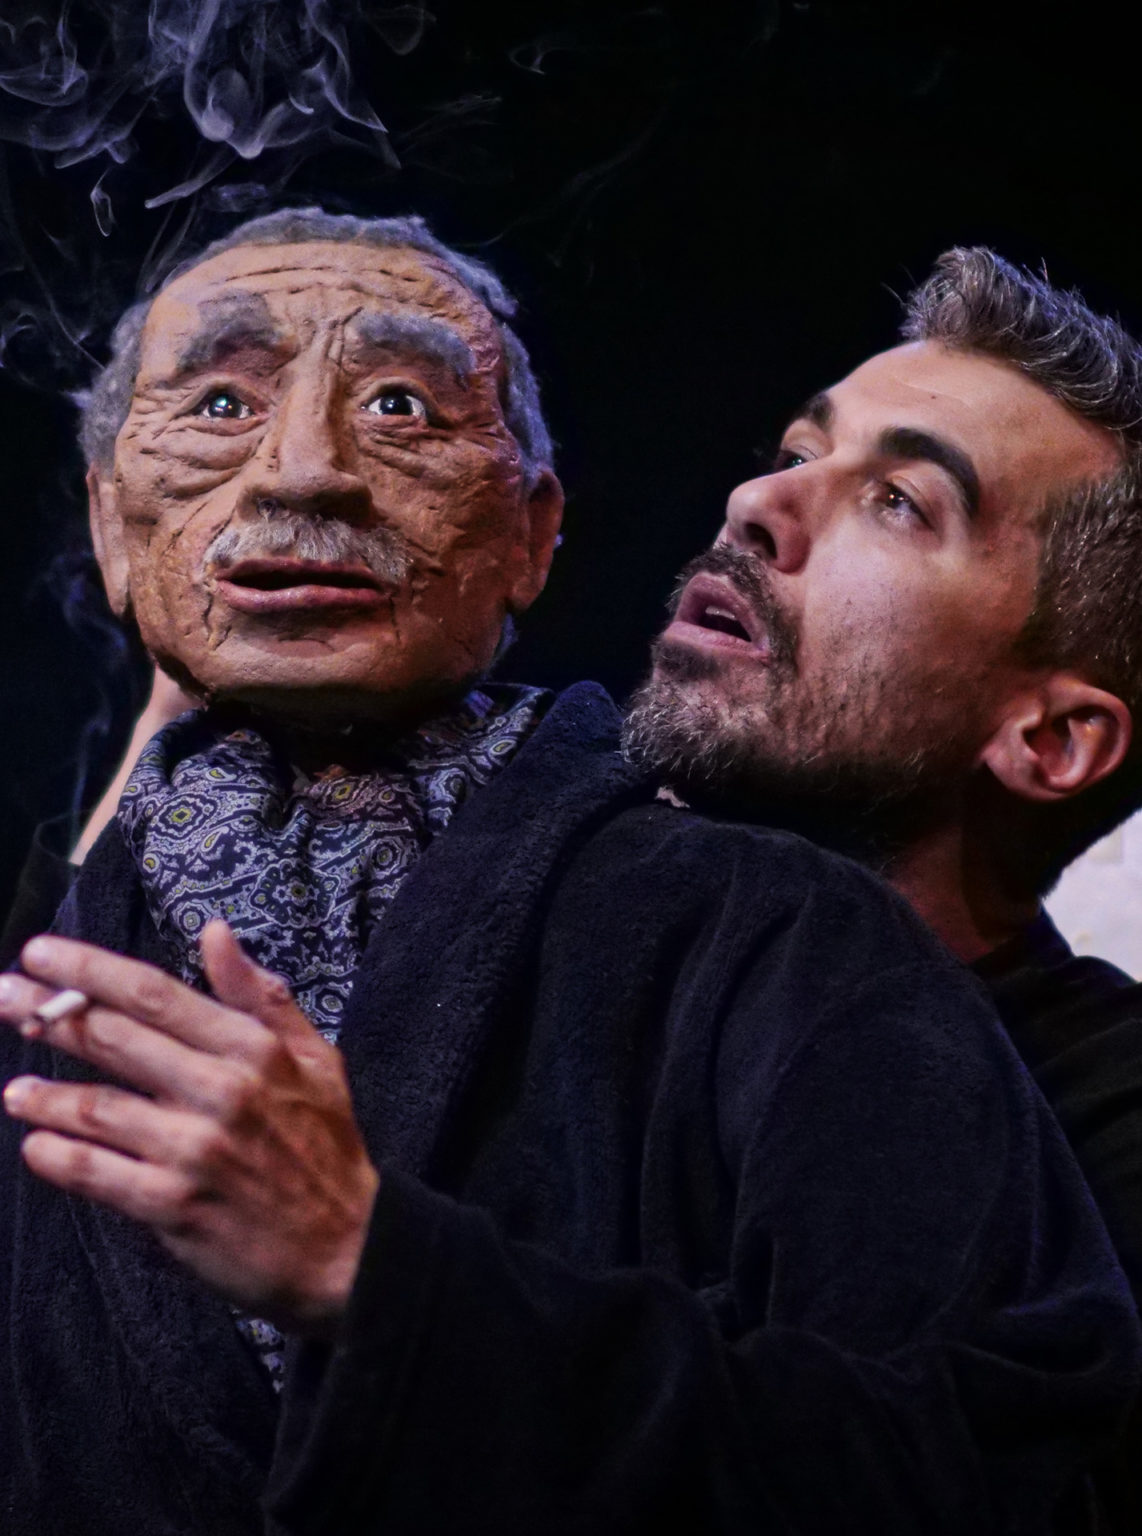 Photo du spectacle "Parti en fumée" où l'on voit le comédien Othmane Moumen avec une marionnette représentant son père. Il fume.